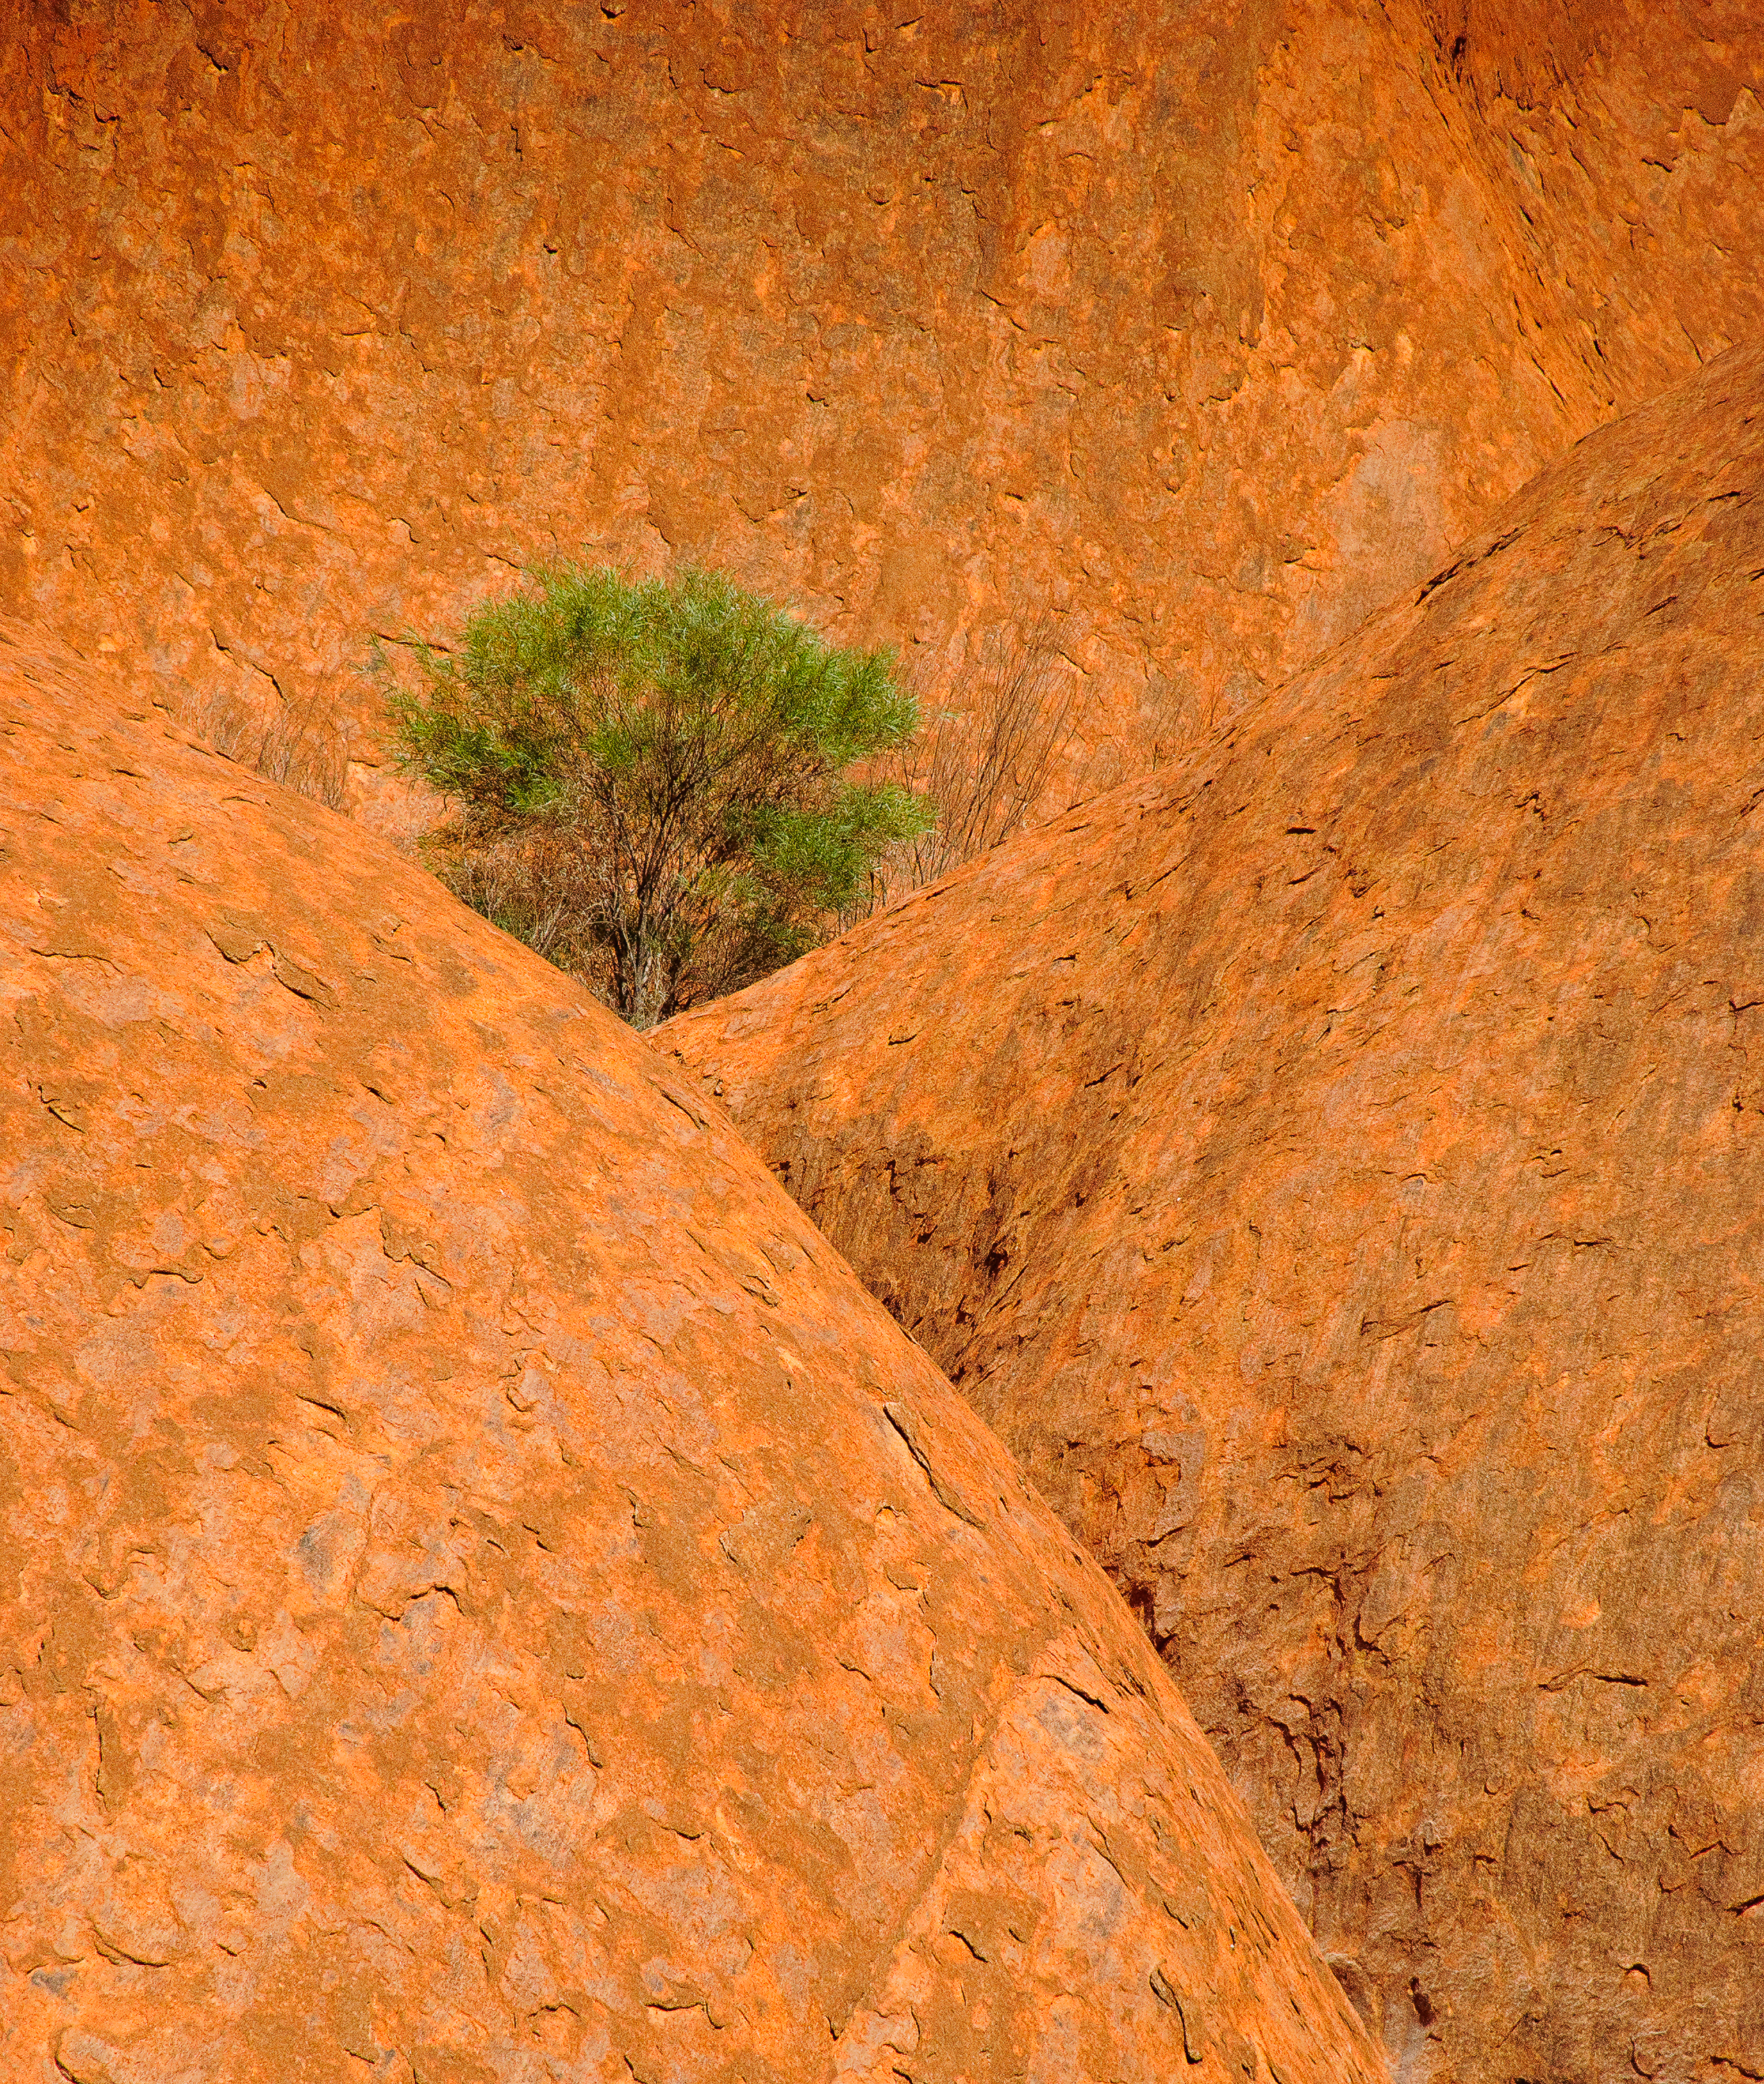 Tree, Uluru, Australia (2007)